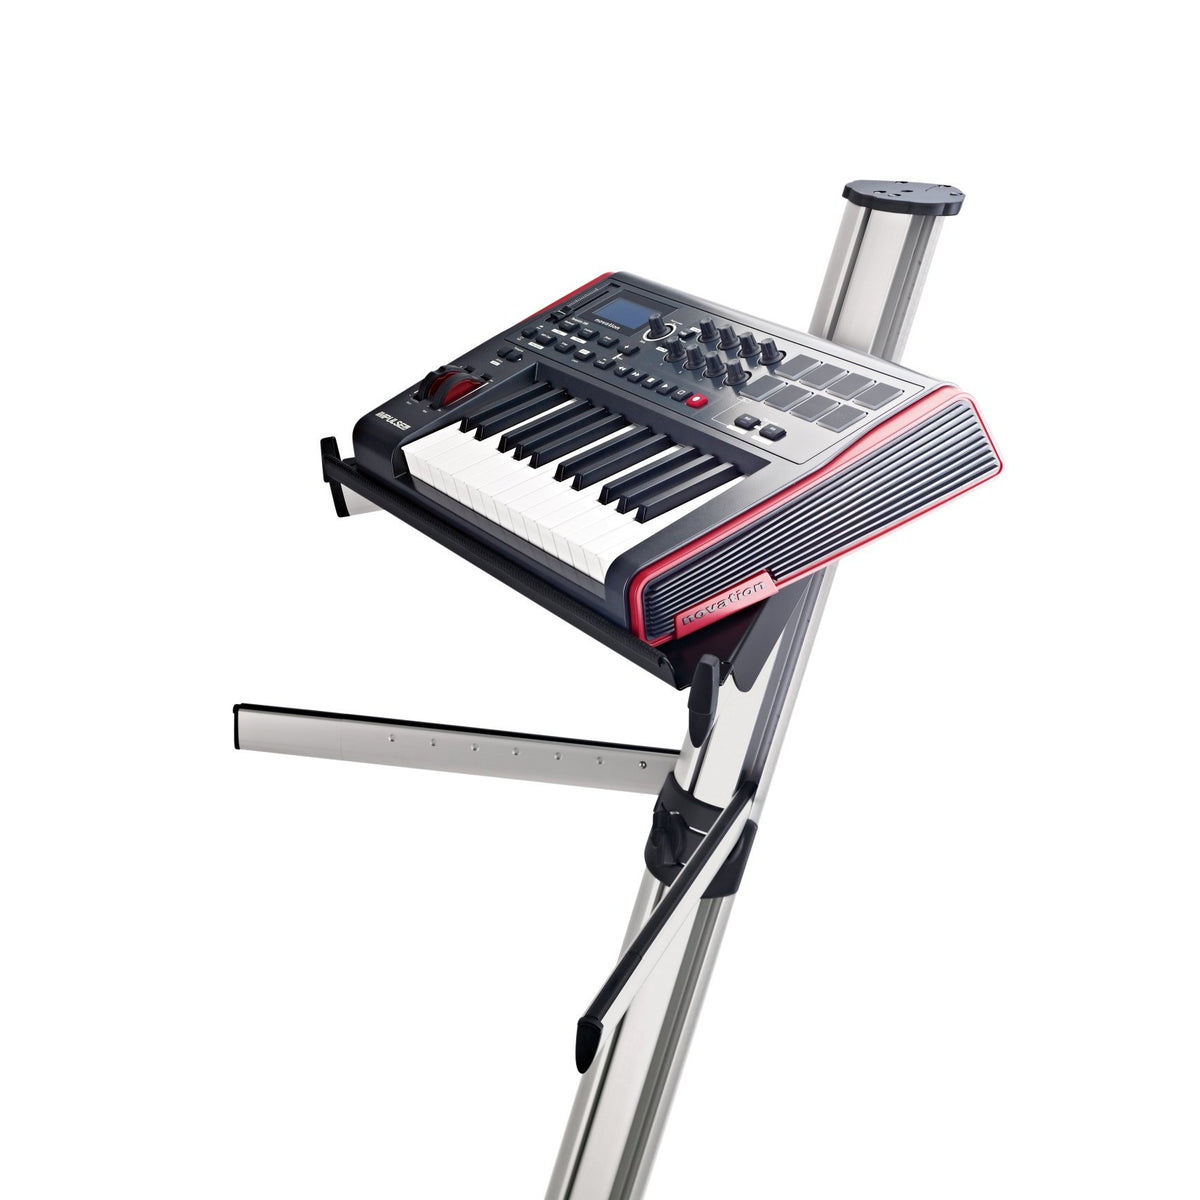 KÃ¶nig &amp; Meyer - 18876 Controller Keyboard Tray for &lt;Spider Pro&gt; Keyboard Stand-Instrument Stand-KÃ¶nig &amp; Meyer-Music Elements